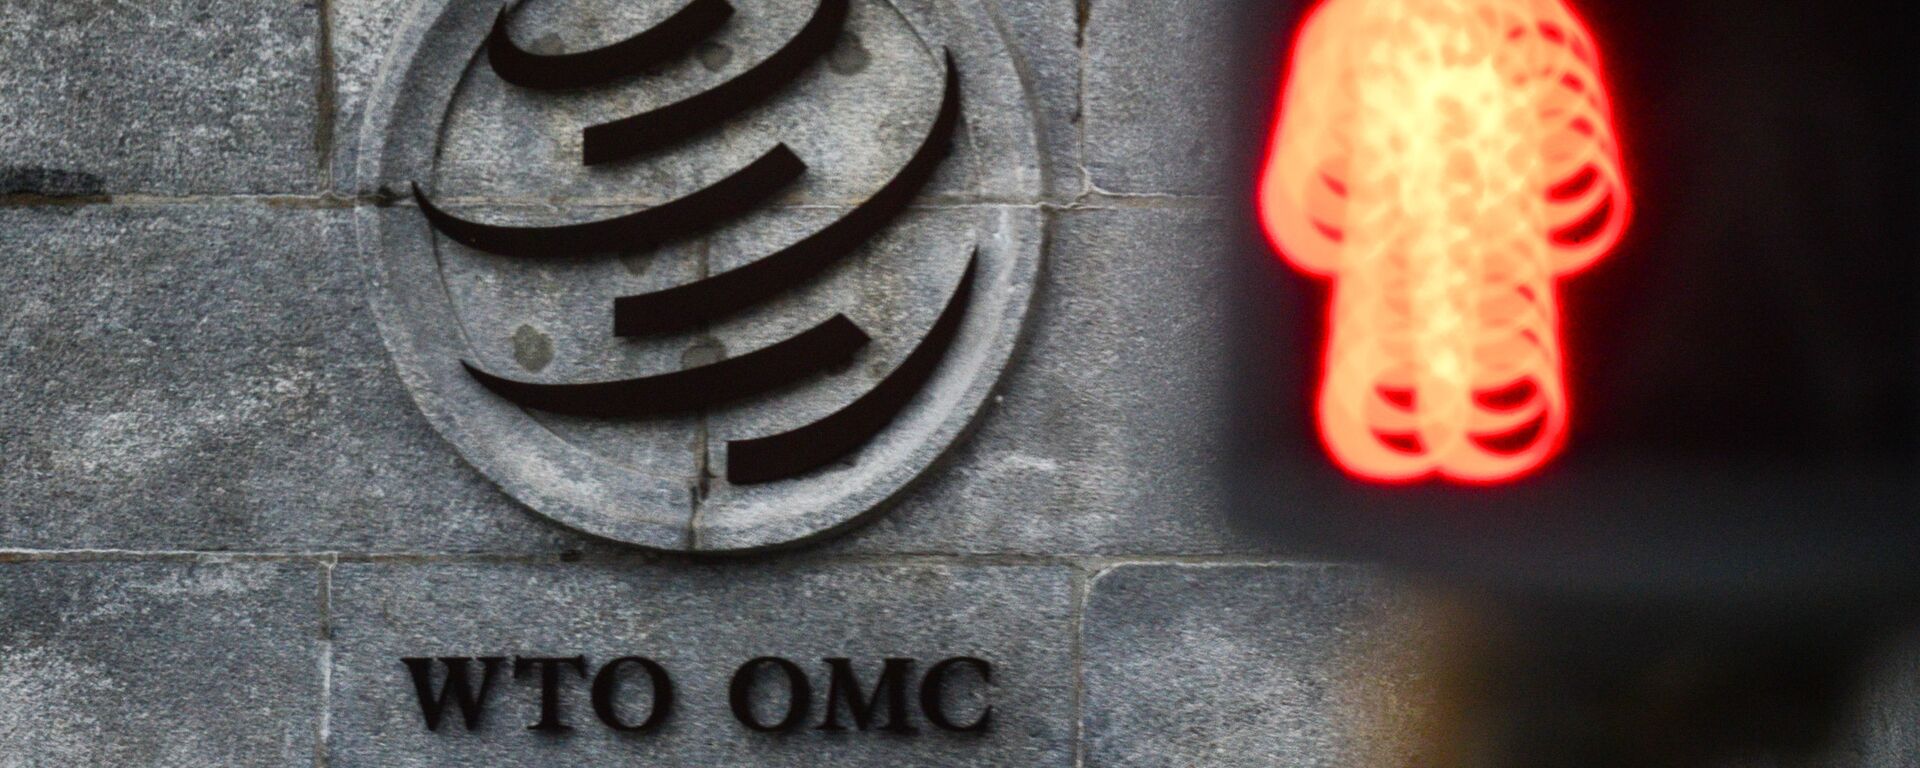 El logo de la OMC sobre su sede en Ginebra - Sputnik Mundo, 1920, 06.05.2021